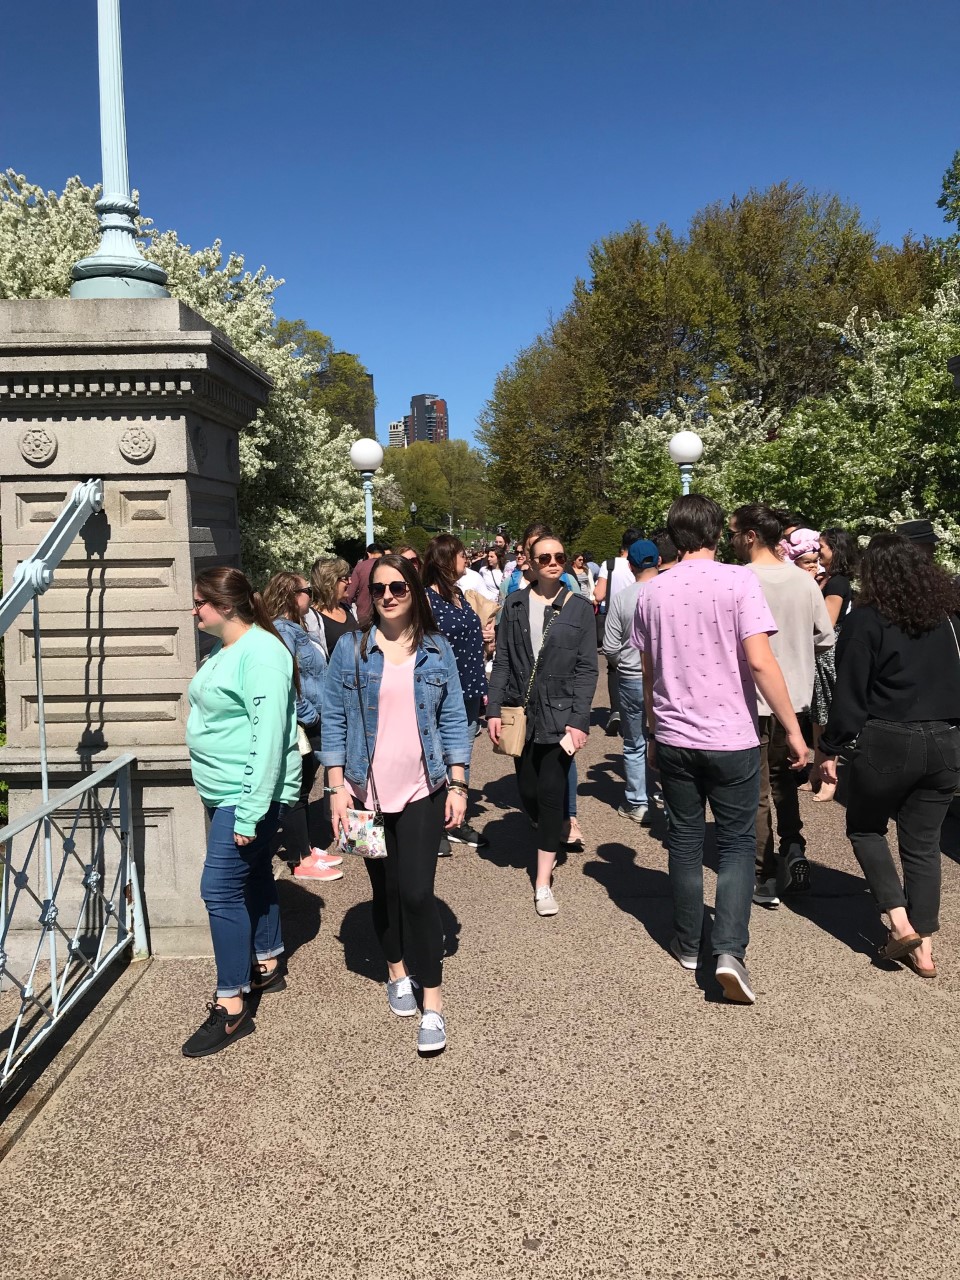 crowds in boston summer public garden bridge.jpg